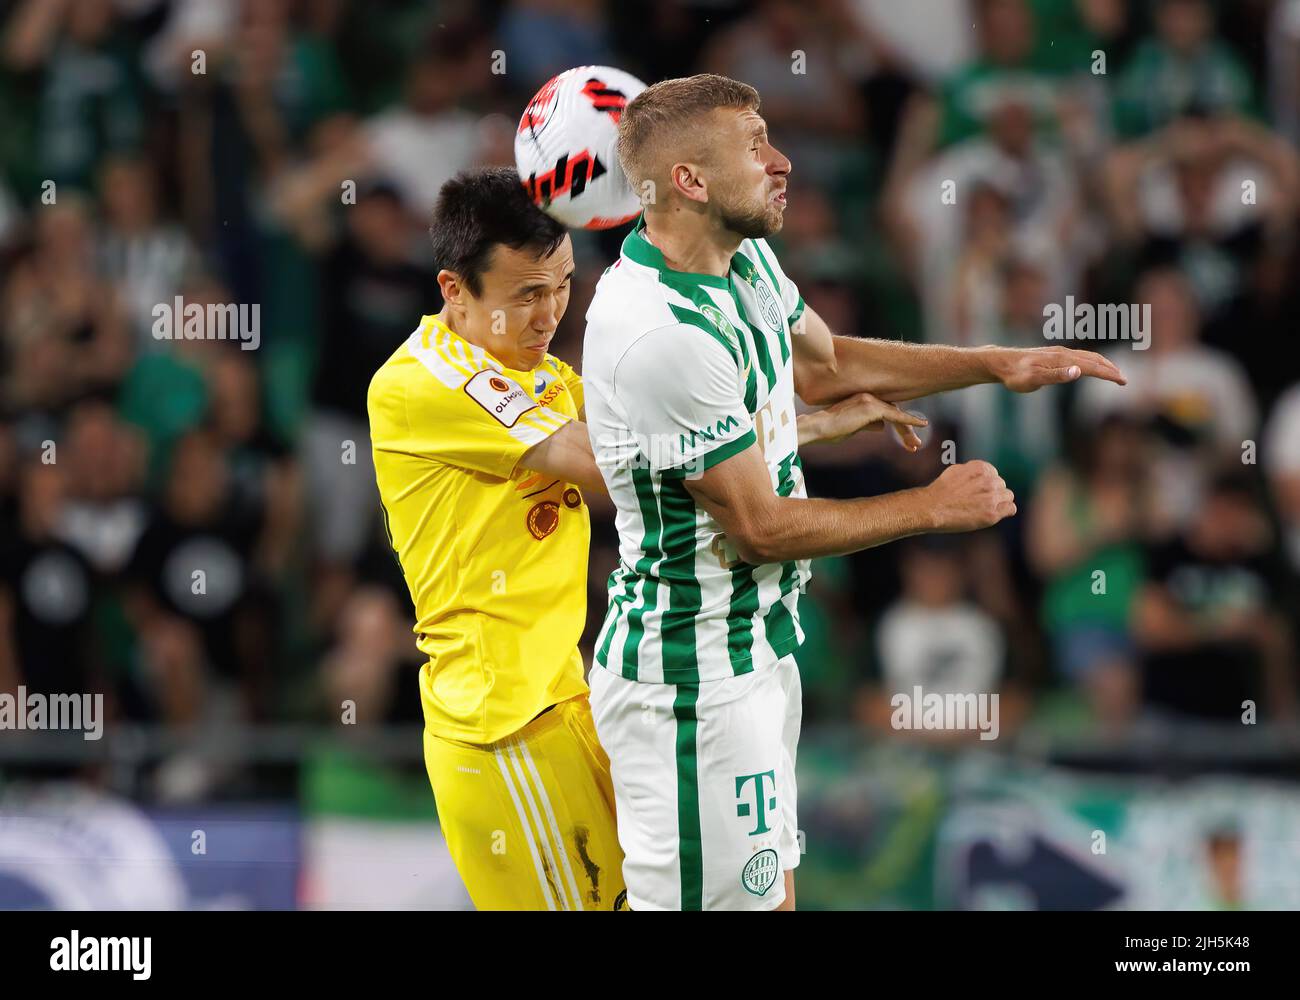 Zarko Tomasevic of FC Tobol challenges Samy Mmaee of Ferencvarosi TC  News Photo - Getty Images